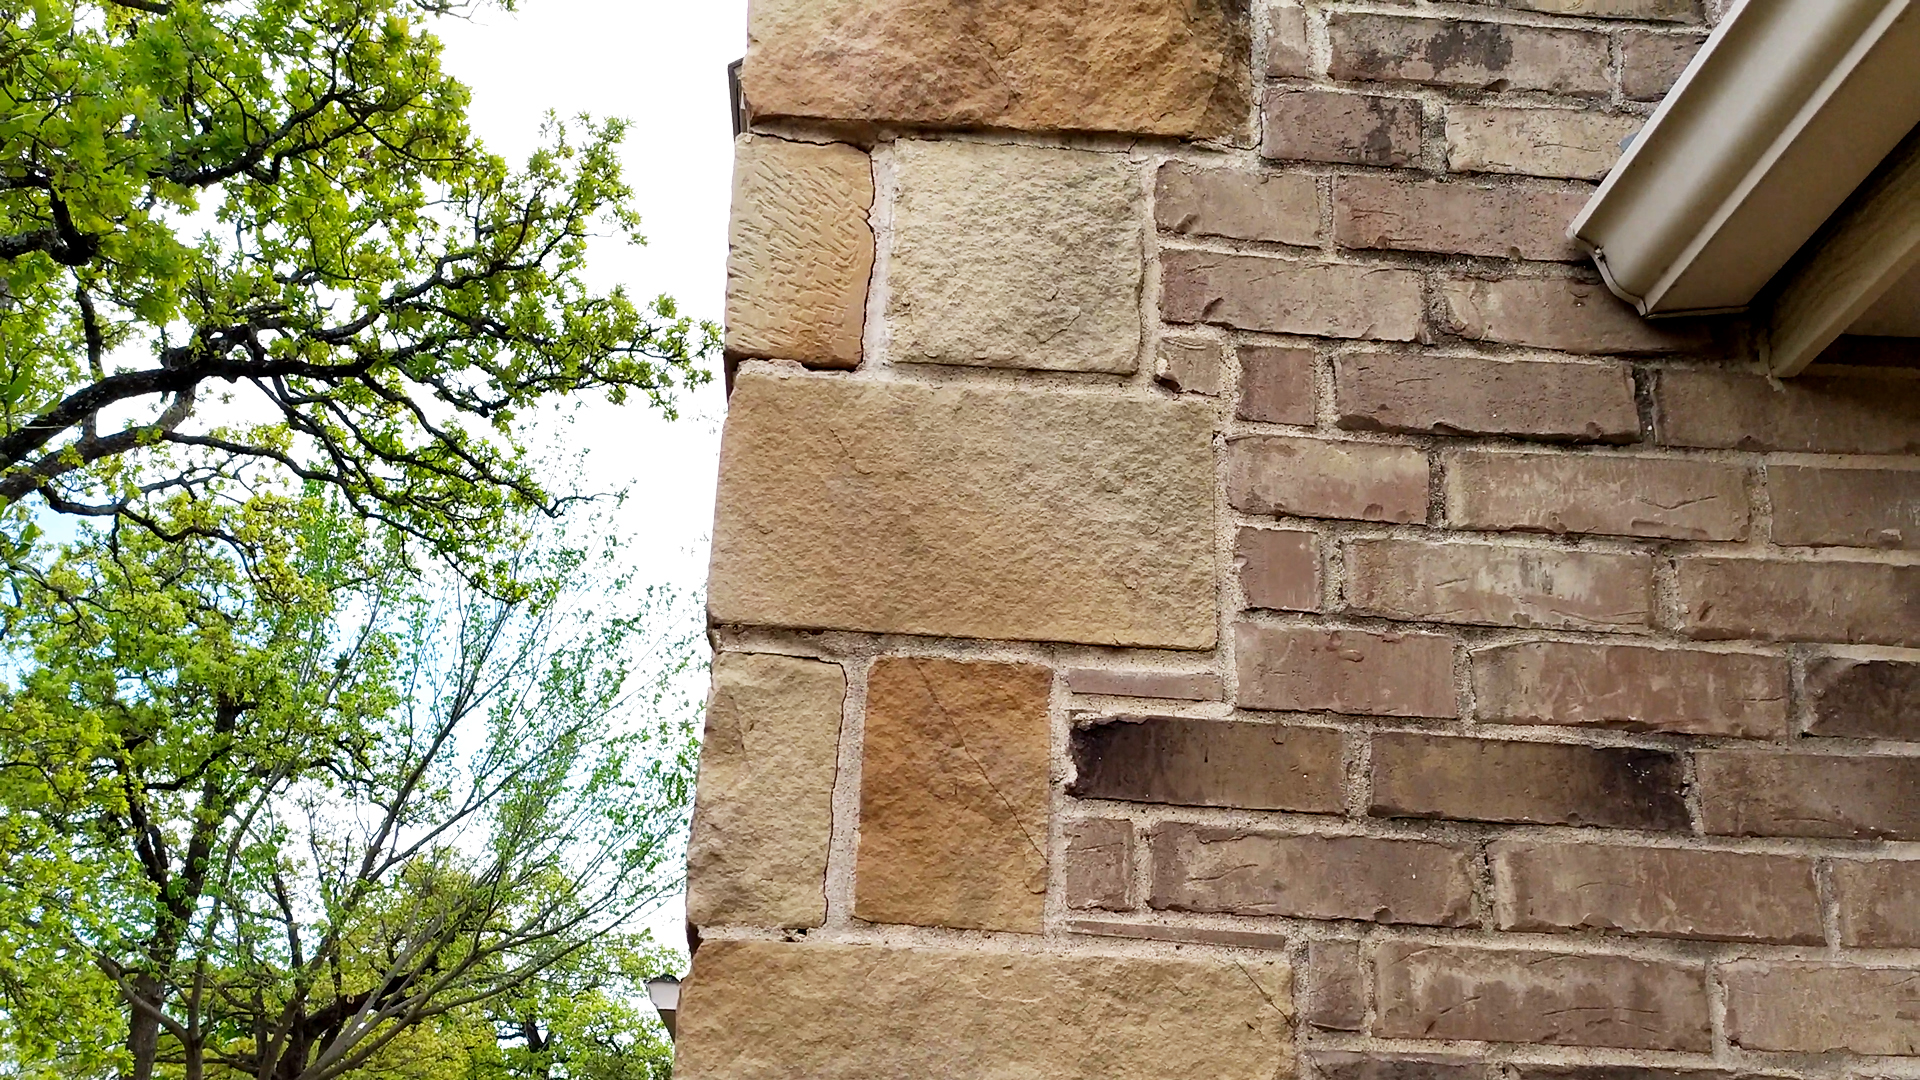 Common cracking on stone veneer